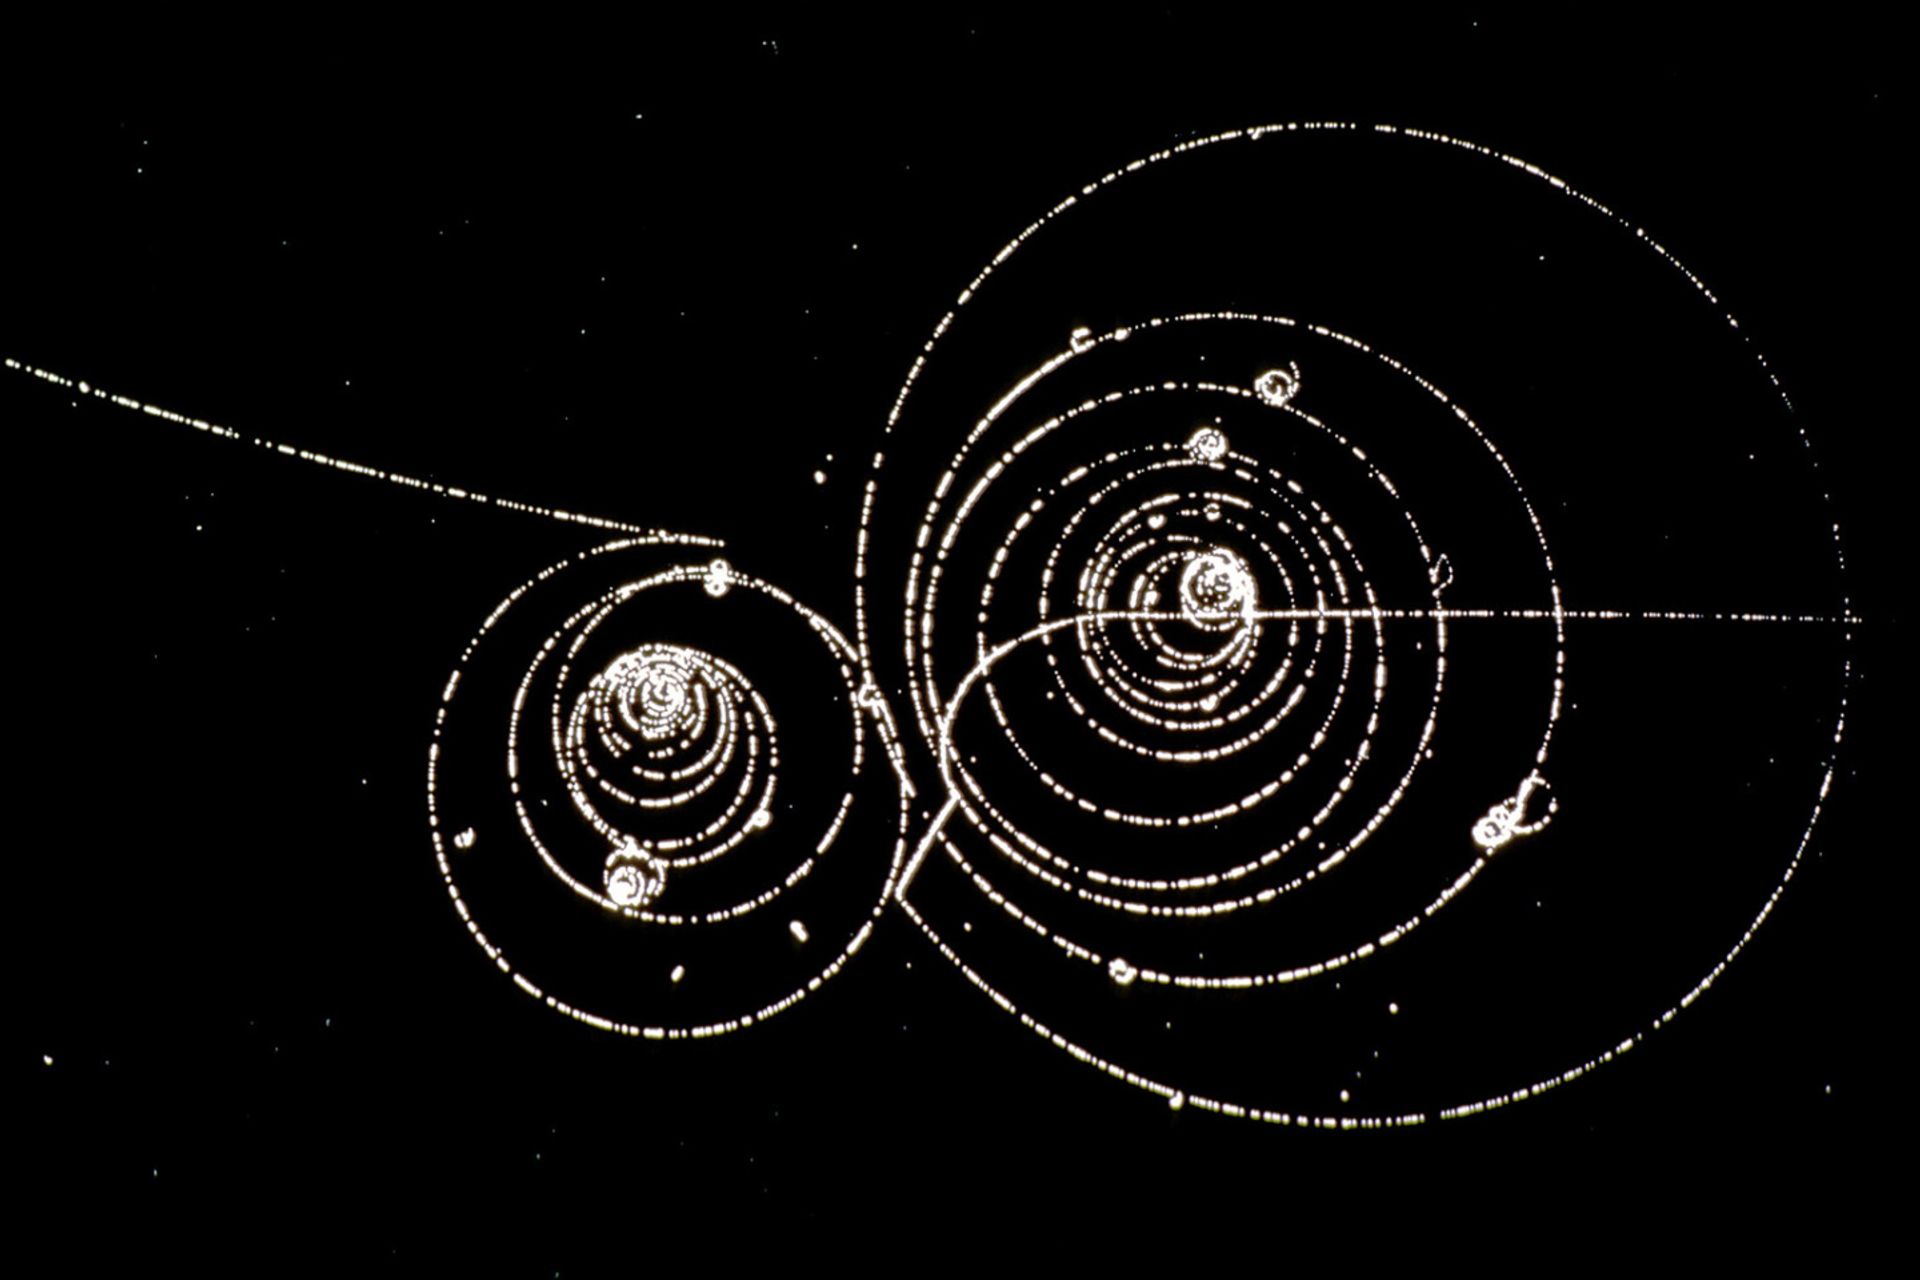 Nel 1928 il fisico britannico Paul Dirac ipotizzò che per ogni particella esistesse una corrispondente antiparticella, esattamente uguale alla particella, ma con carica opposta: per esempio, per l'elettrone dovrebbe esistere un "antielettrone", o "positrone", identico in tutto e per tutto, ma con una carica elettrica positiva. L'intuizione ha aperto la possibilità di intere galassie e universi fatti di antimateria, ma quando materia e antimateria entrano in contatto, si annichilano, scomparendo in un lampo di energia. (Foto: CERN)